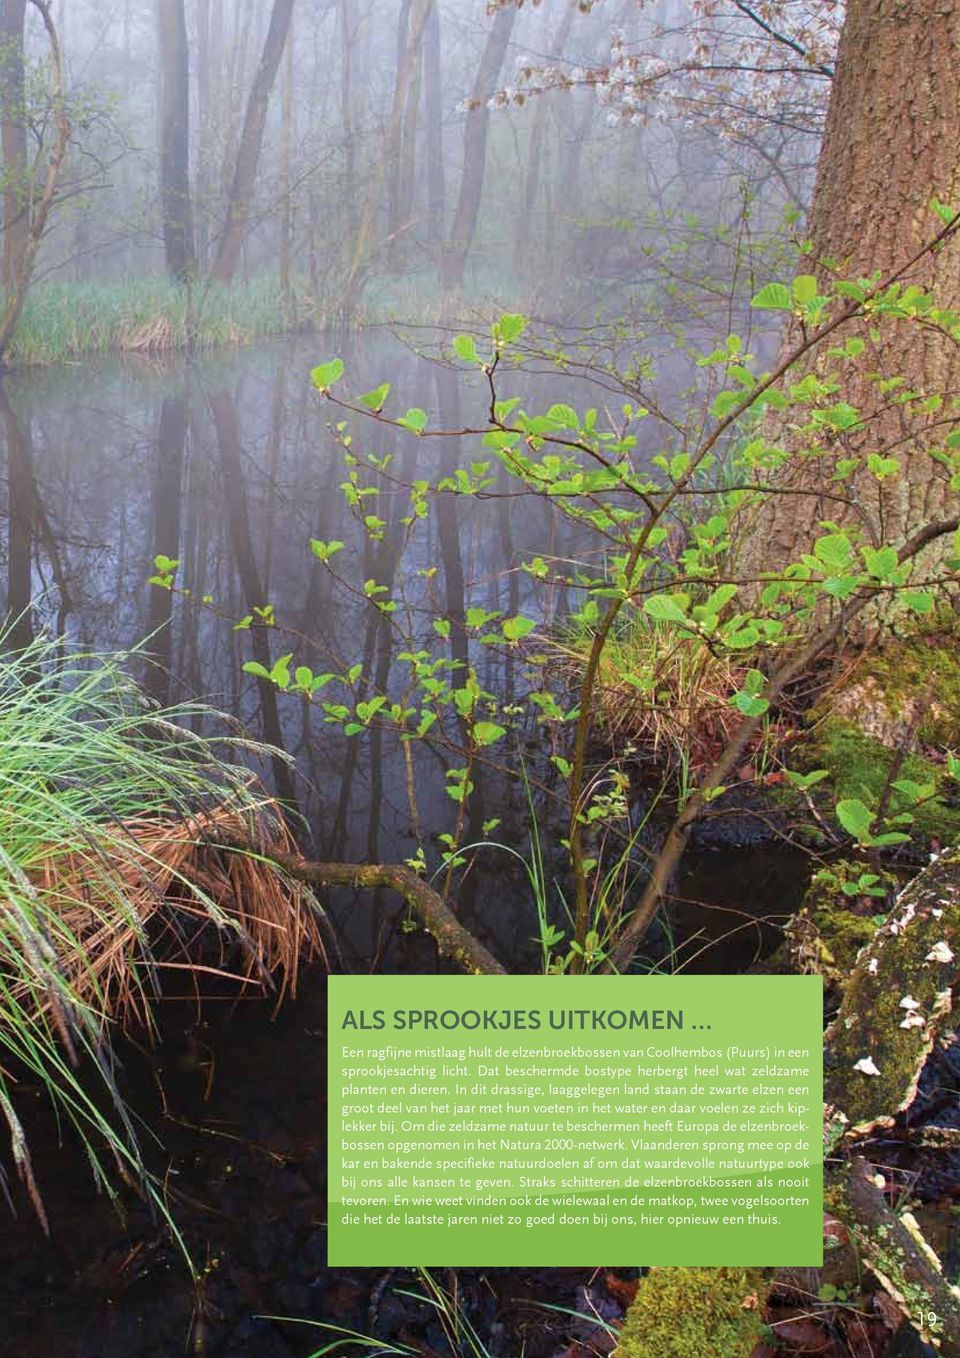 Om die zeldzame natuur te beschermen heeft Europa de elzenbroekbossen opgenomen in het Natura 2000-netwerk.